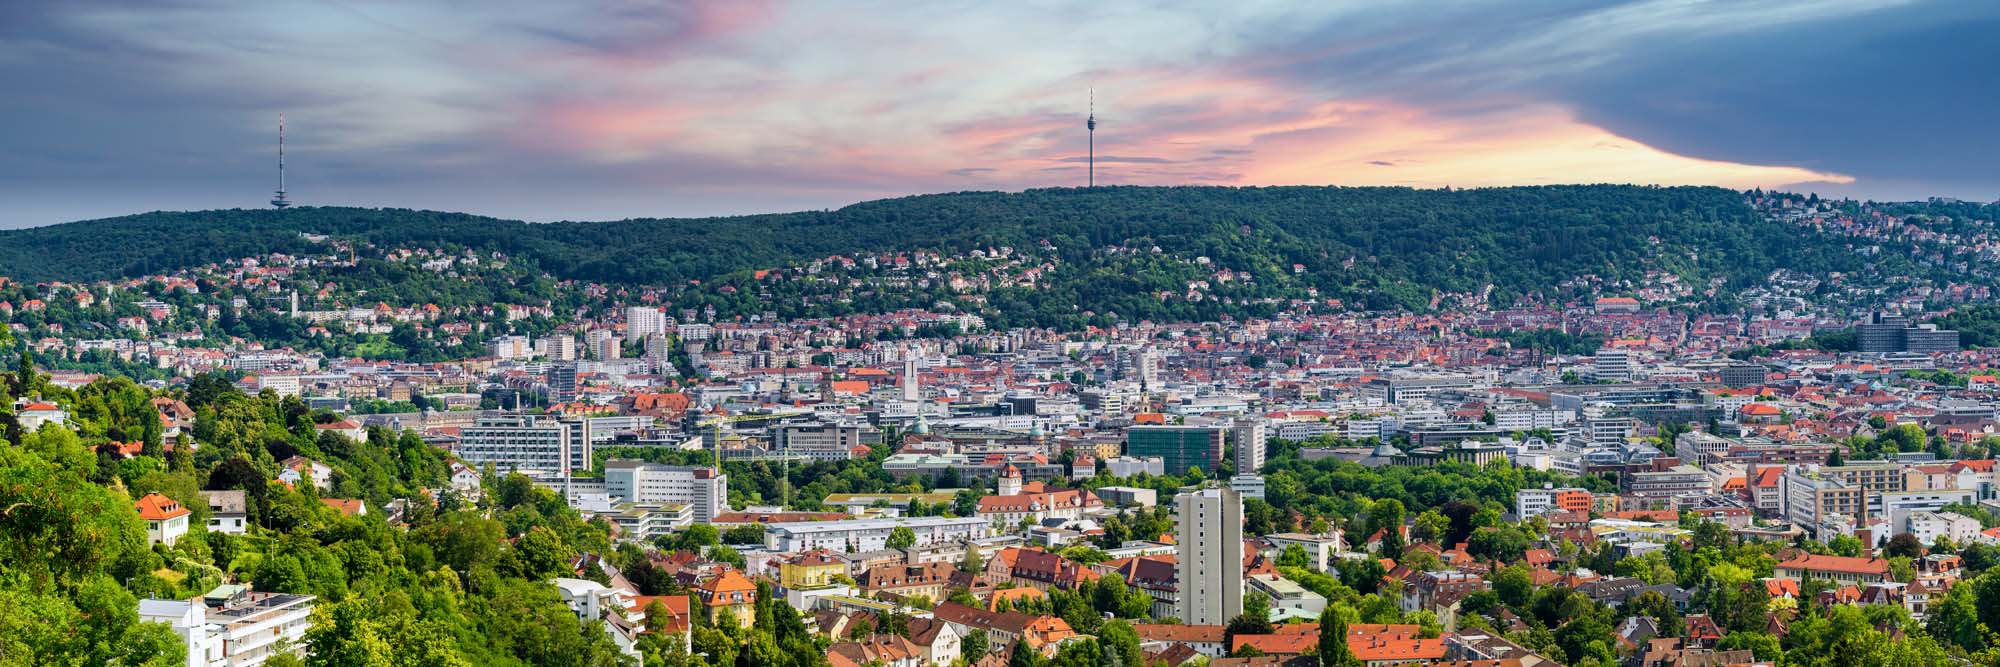 Die Skyline der Stadt Stuttgart mit dem Fernsehturm.